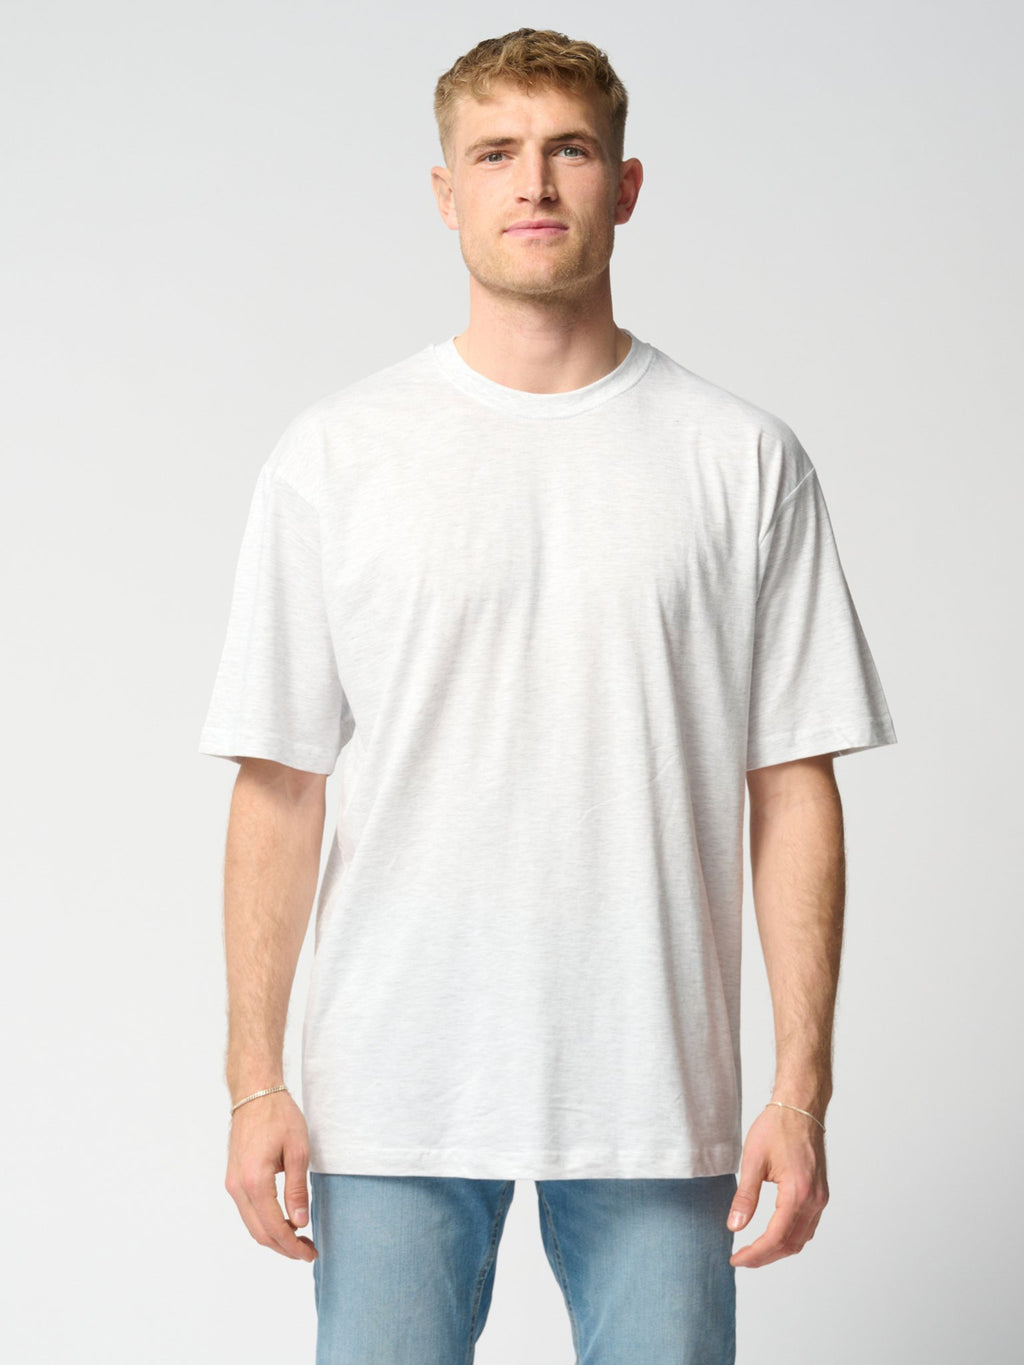 Υπερμεγέθη μπλουζάκια - πακέτο (3 τεμ.)